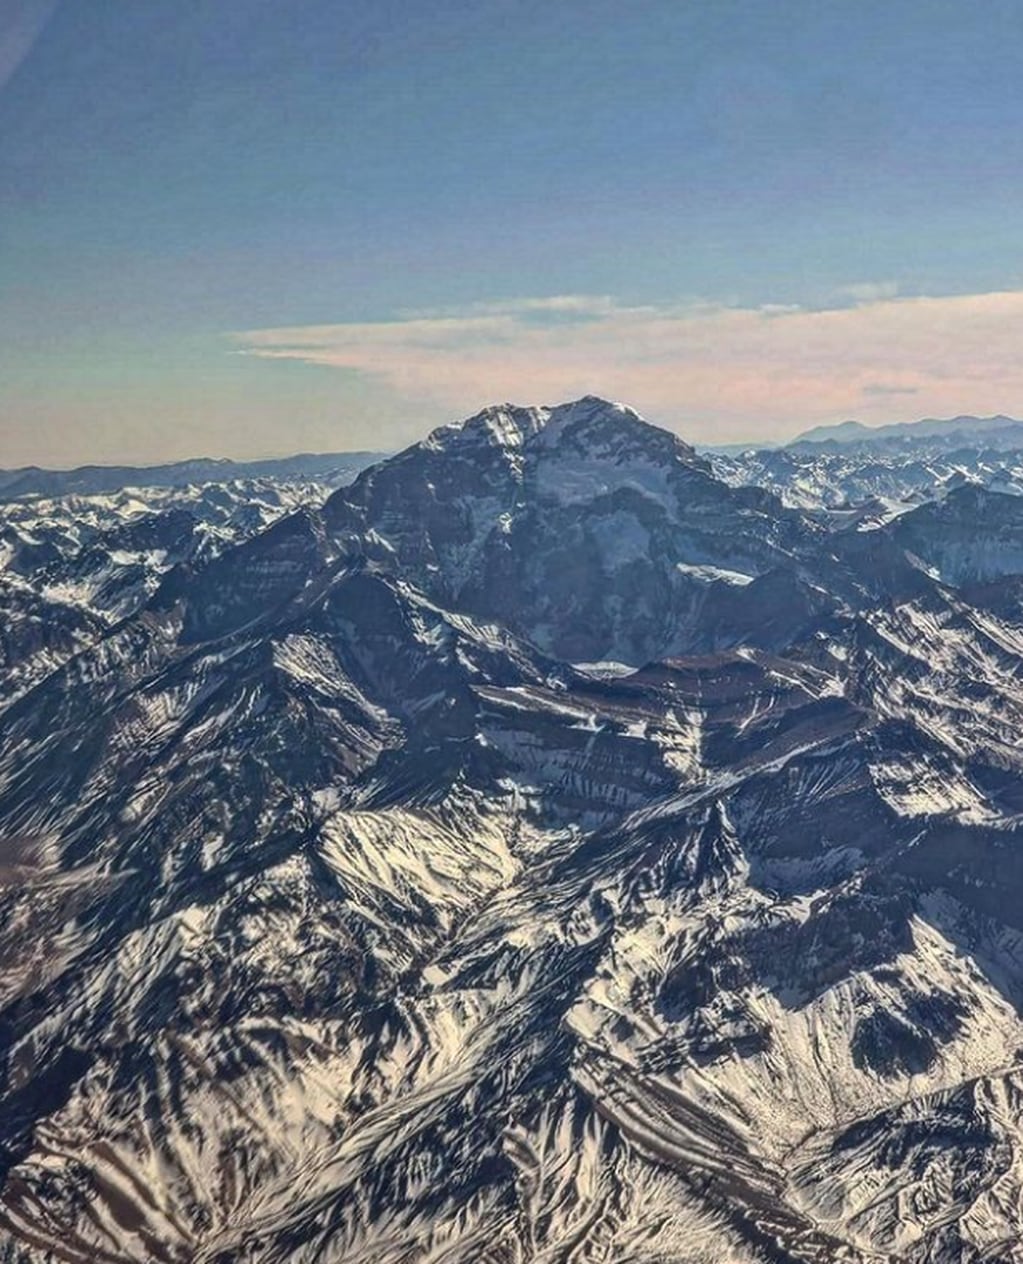 El embalse Potrerillos y el cerro Aconcagua, desde el aire, en todo su esplendor y como nunca se los vio. Foto: Instagram @alevigilmalbec